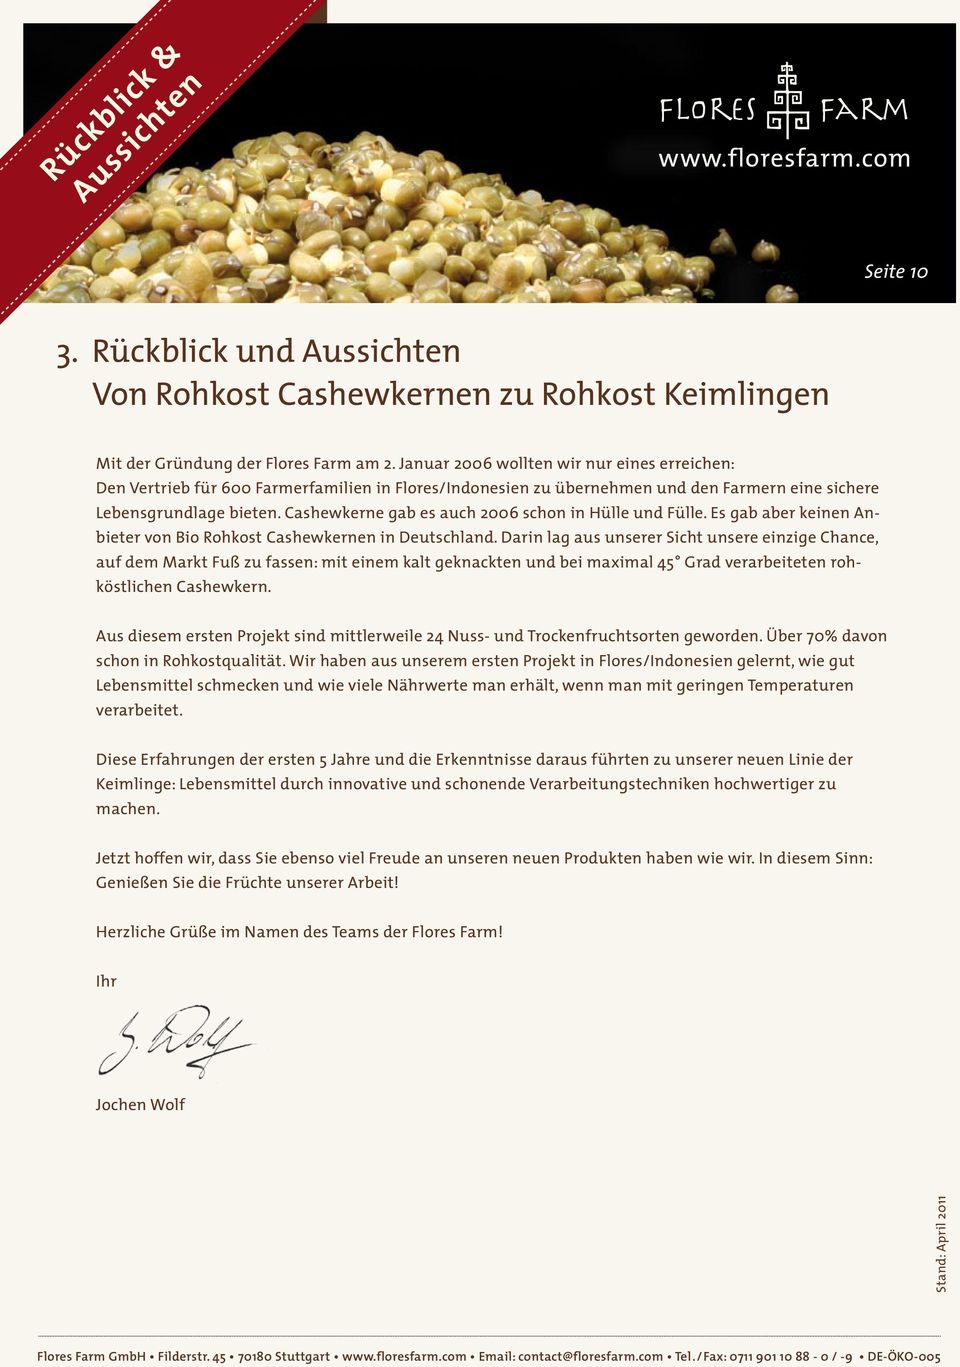 Cashewkerne gab es auch 2006 schon in Hülle und Fülle. Es gab aber keinen Anbieter von Bio Rohkost Cashewkernen in Deutschland.